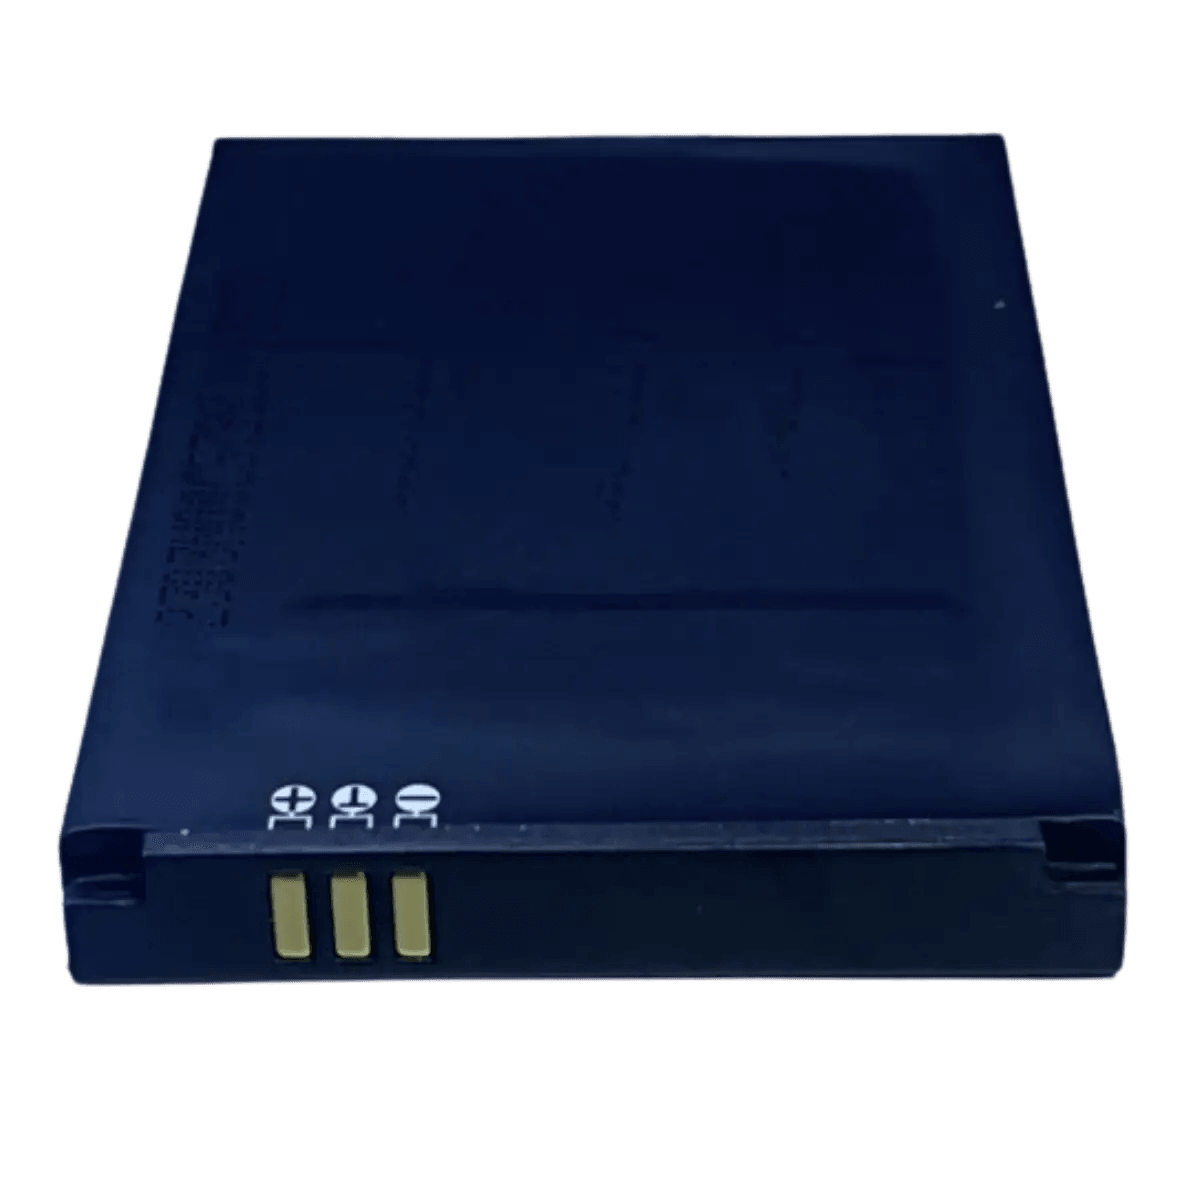 Batterie TBL-71A2000 pour routeur TP Link M5250, M5350, M7000